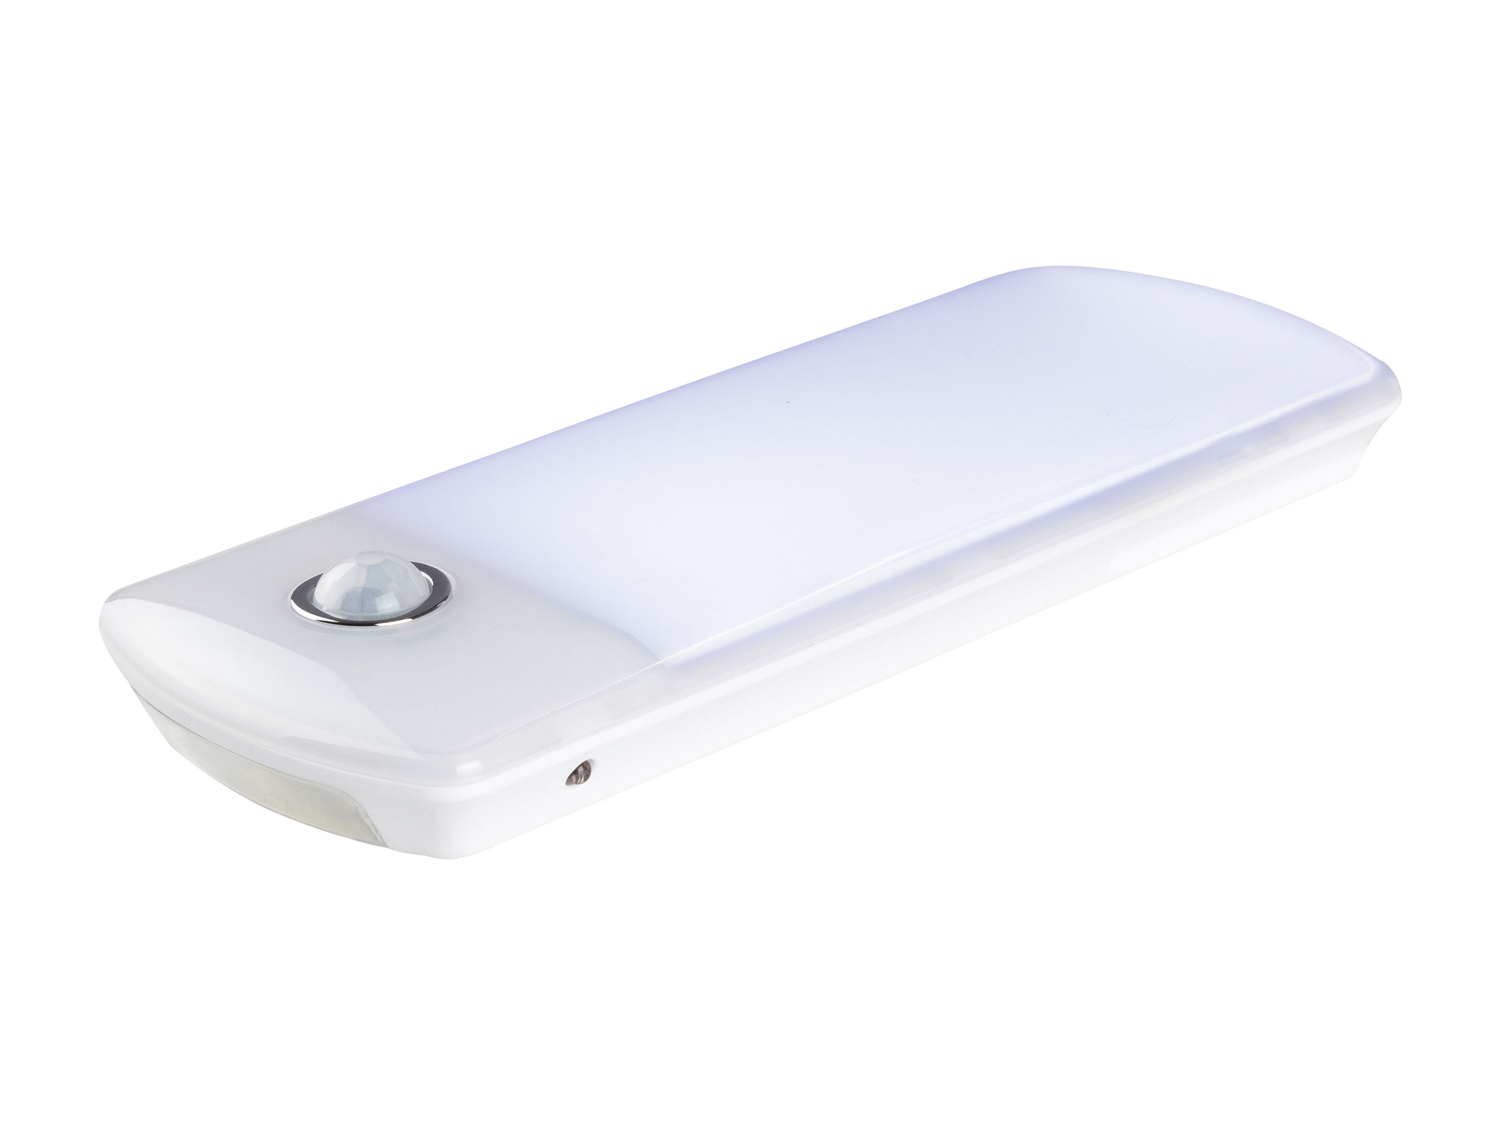 Torcia LED multifunzione Livarno Lux, prezzo 8.99 € 
- 3 in 1:
- torcia tascabile ...